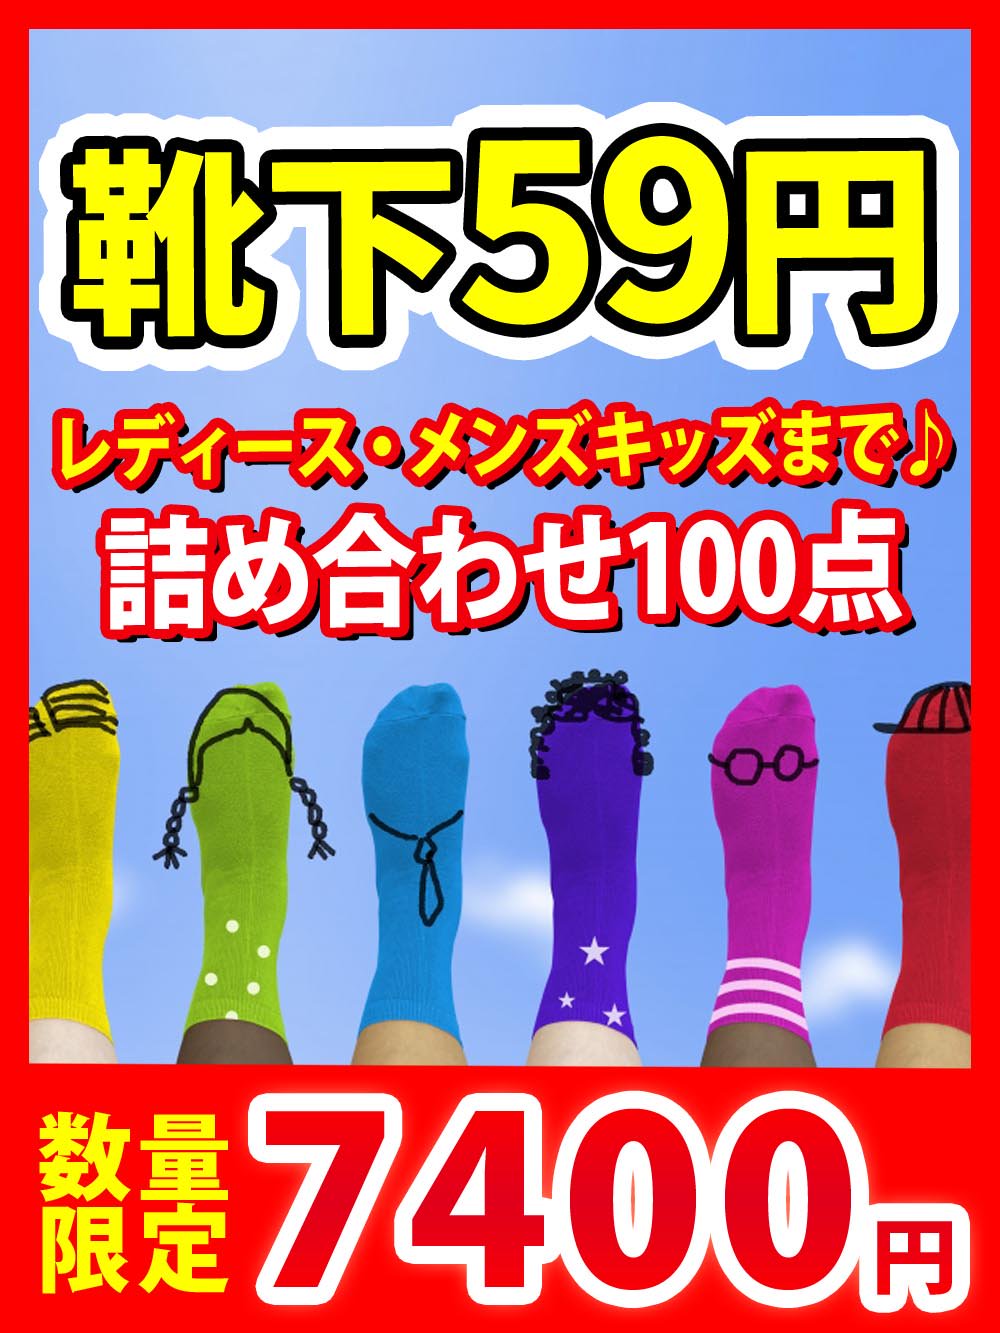 【ソックスALL59円】キッズレディースメンズ靴下雑貨詰め合わせ【100点】